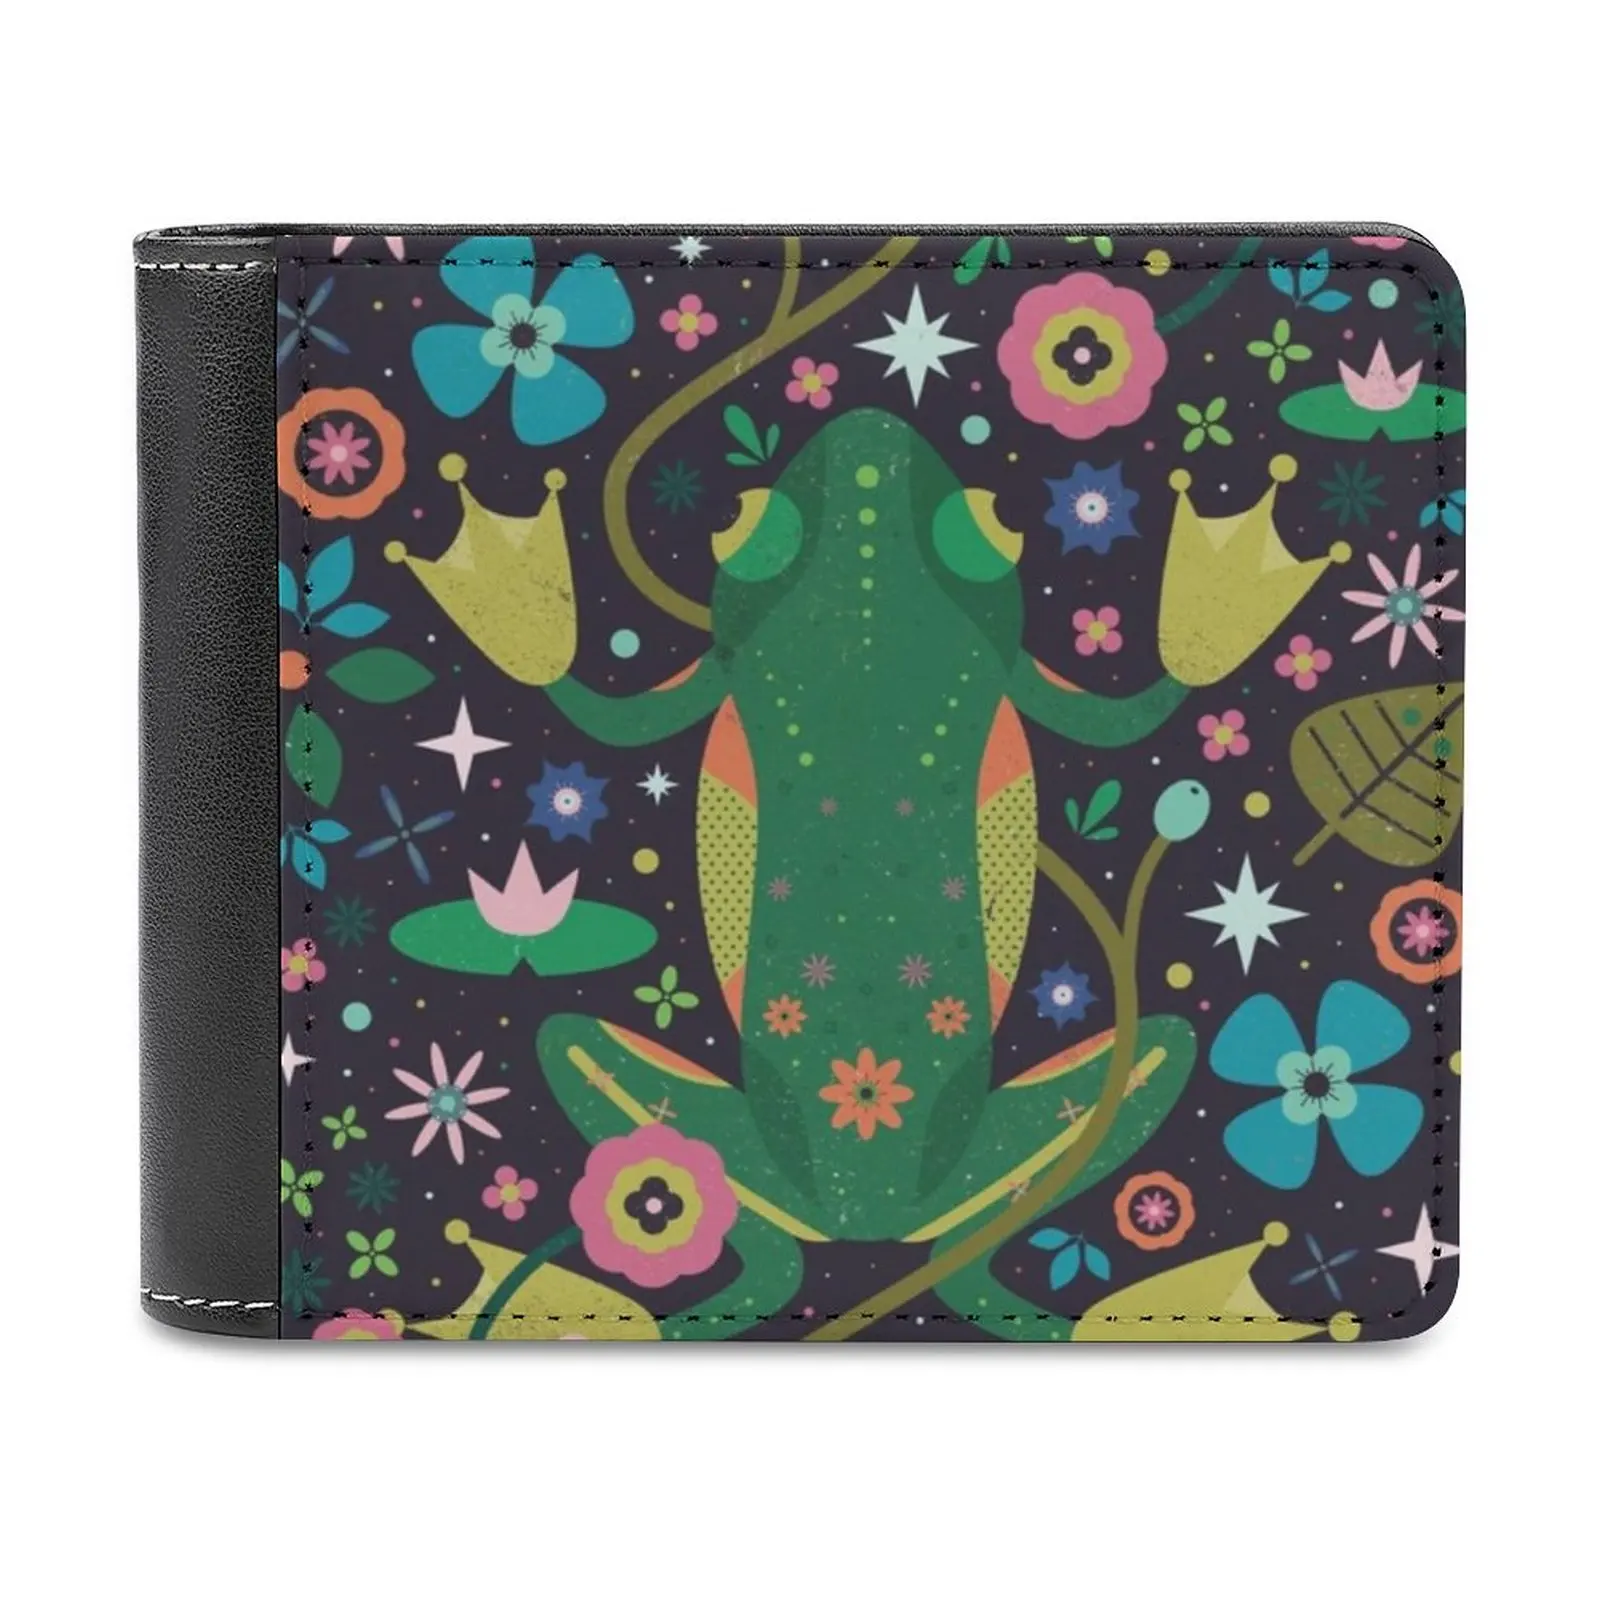 

Портмоне мужское Ботаническое с лягушкой, маленький бумажник для денег в деловом стиле, кошельки с монетницей зеленого цвета, с животными и дикой природой